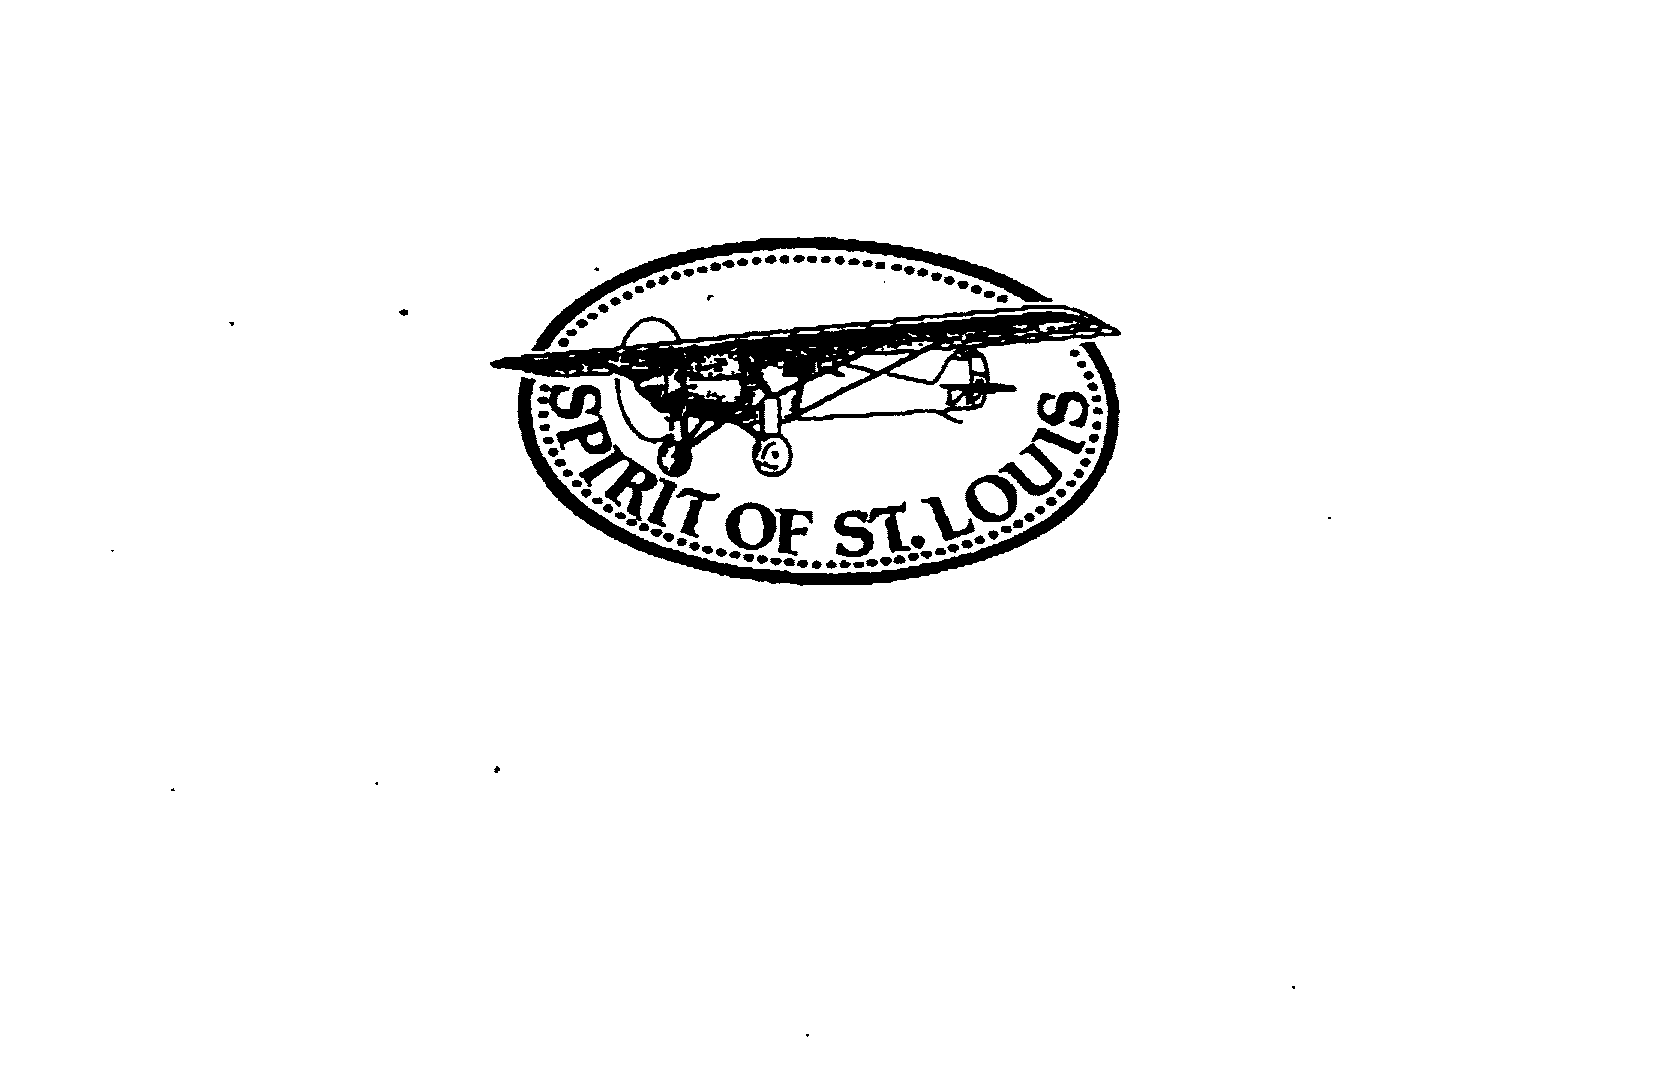 SPIRIT OF ST. LOUIS